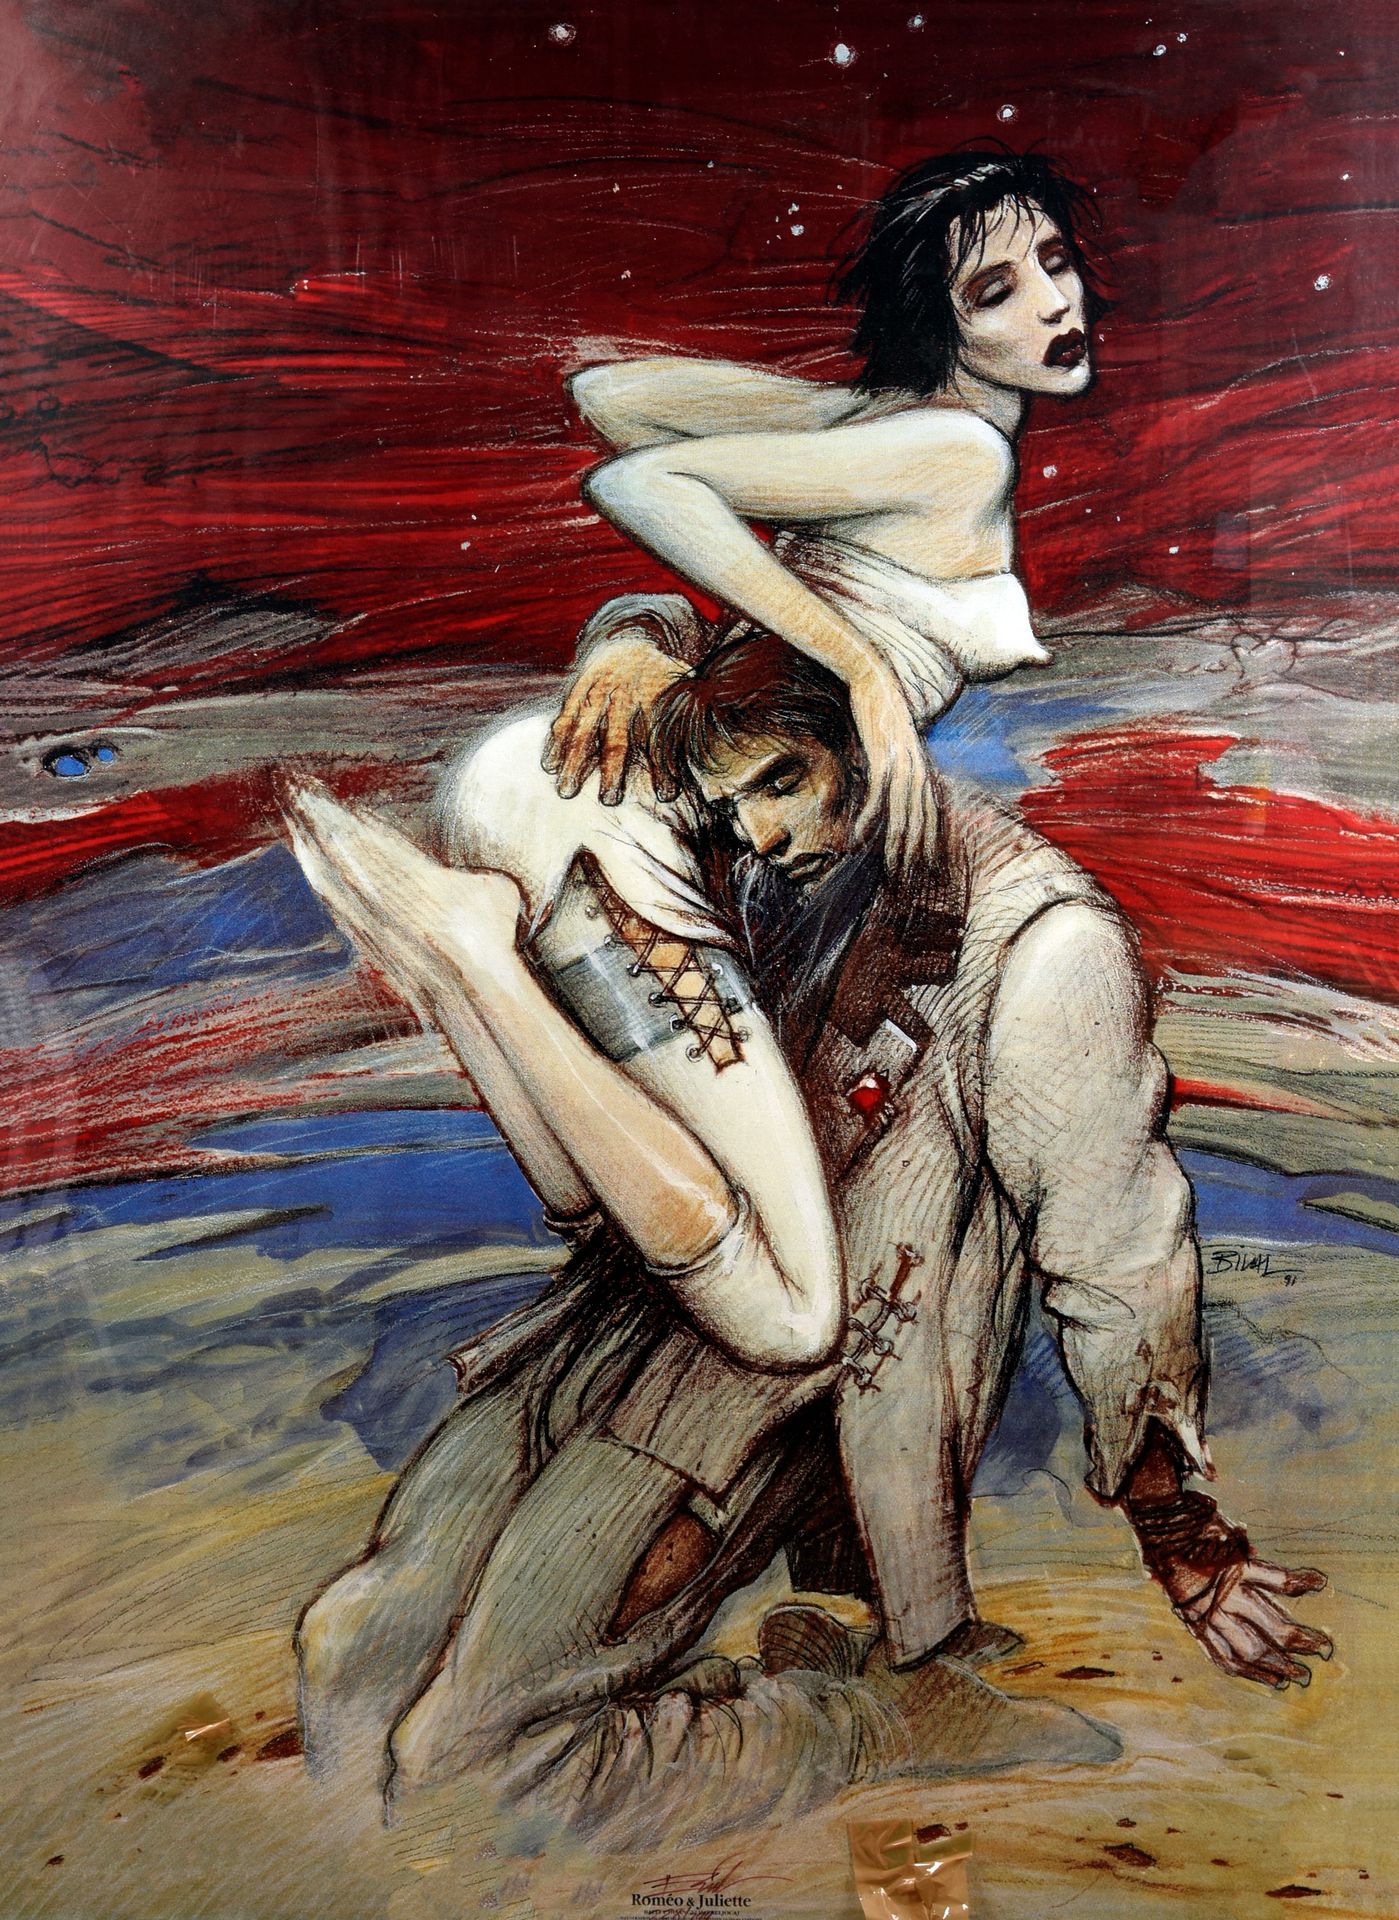 BILAL, Enki (1951) Cartel de Romeo y Julieta para la Ópera de Lyon.

El bailarín&hellip;